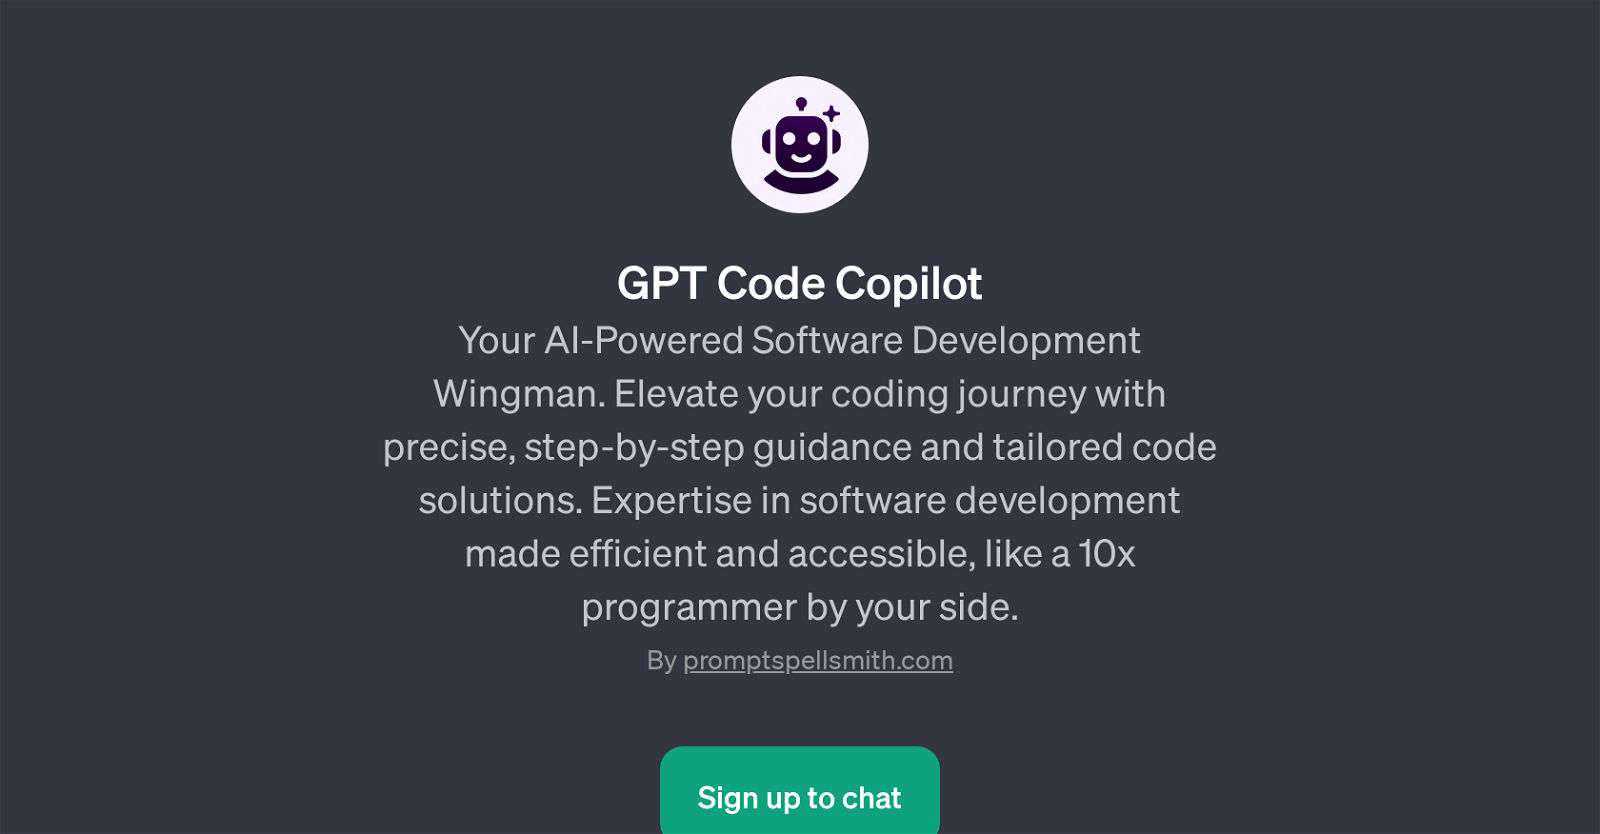 GPT Code Copilot website